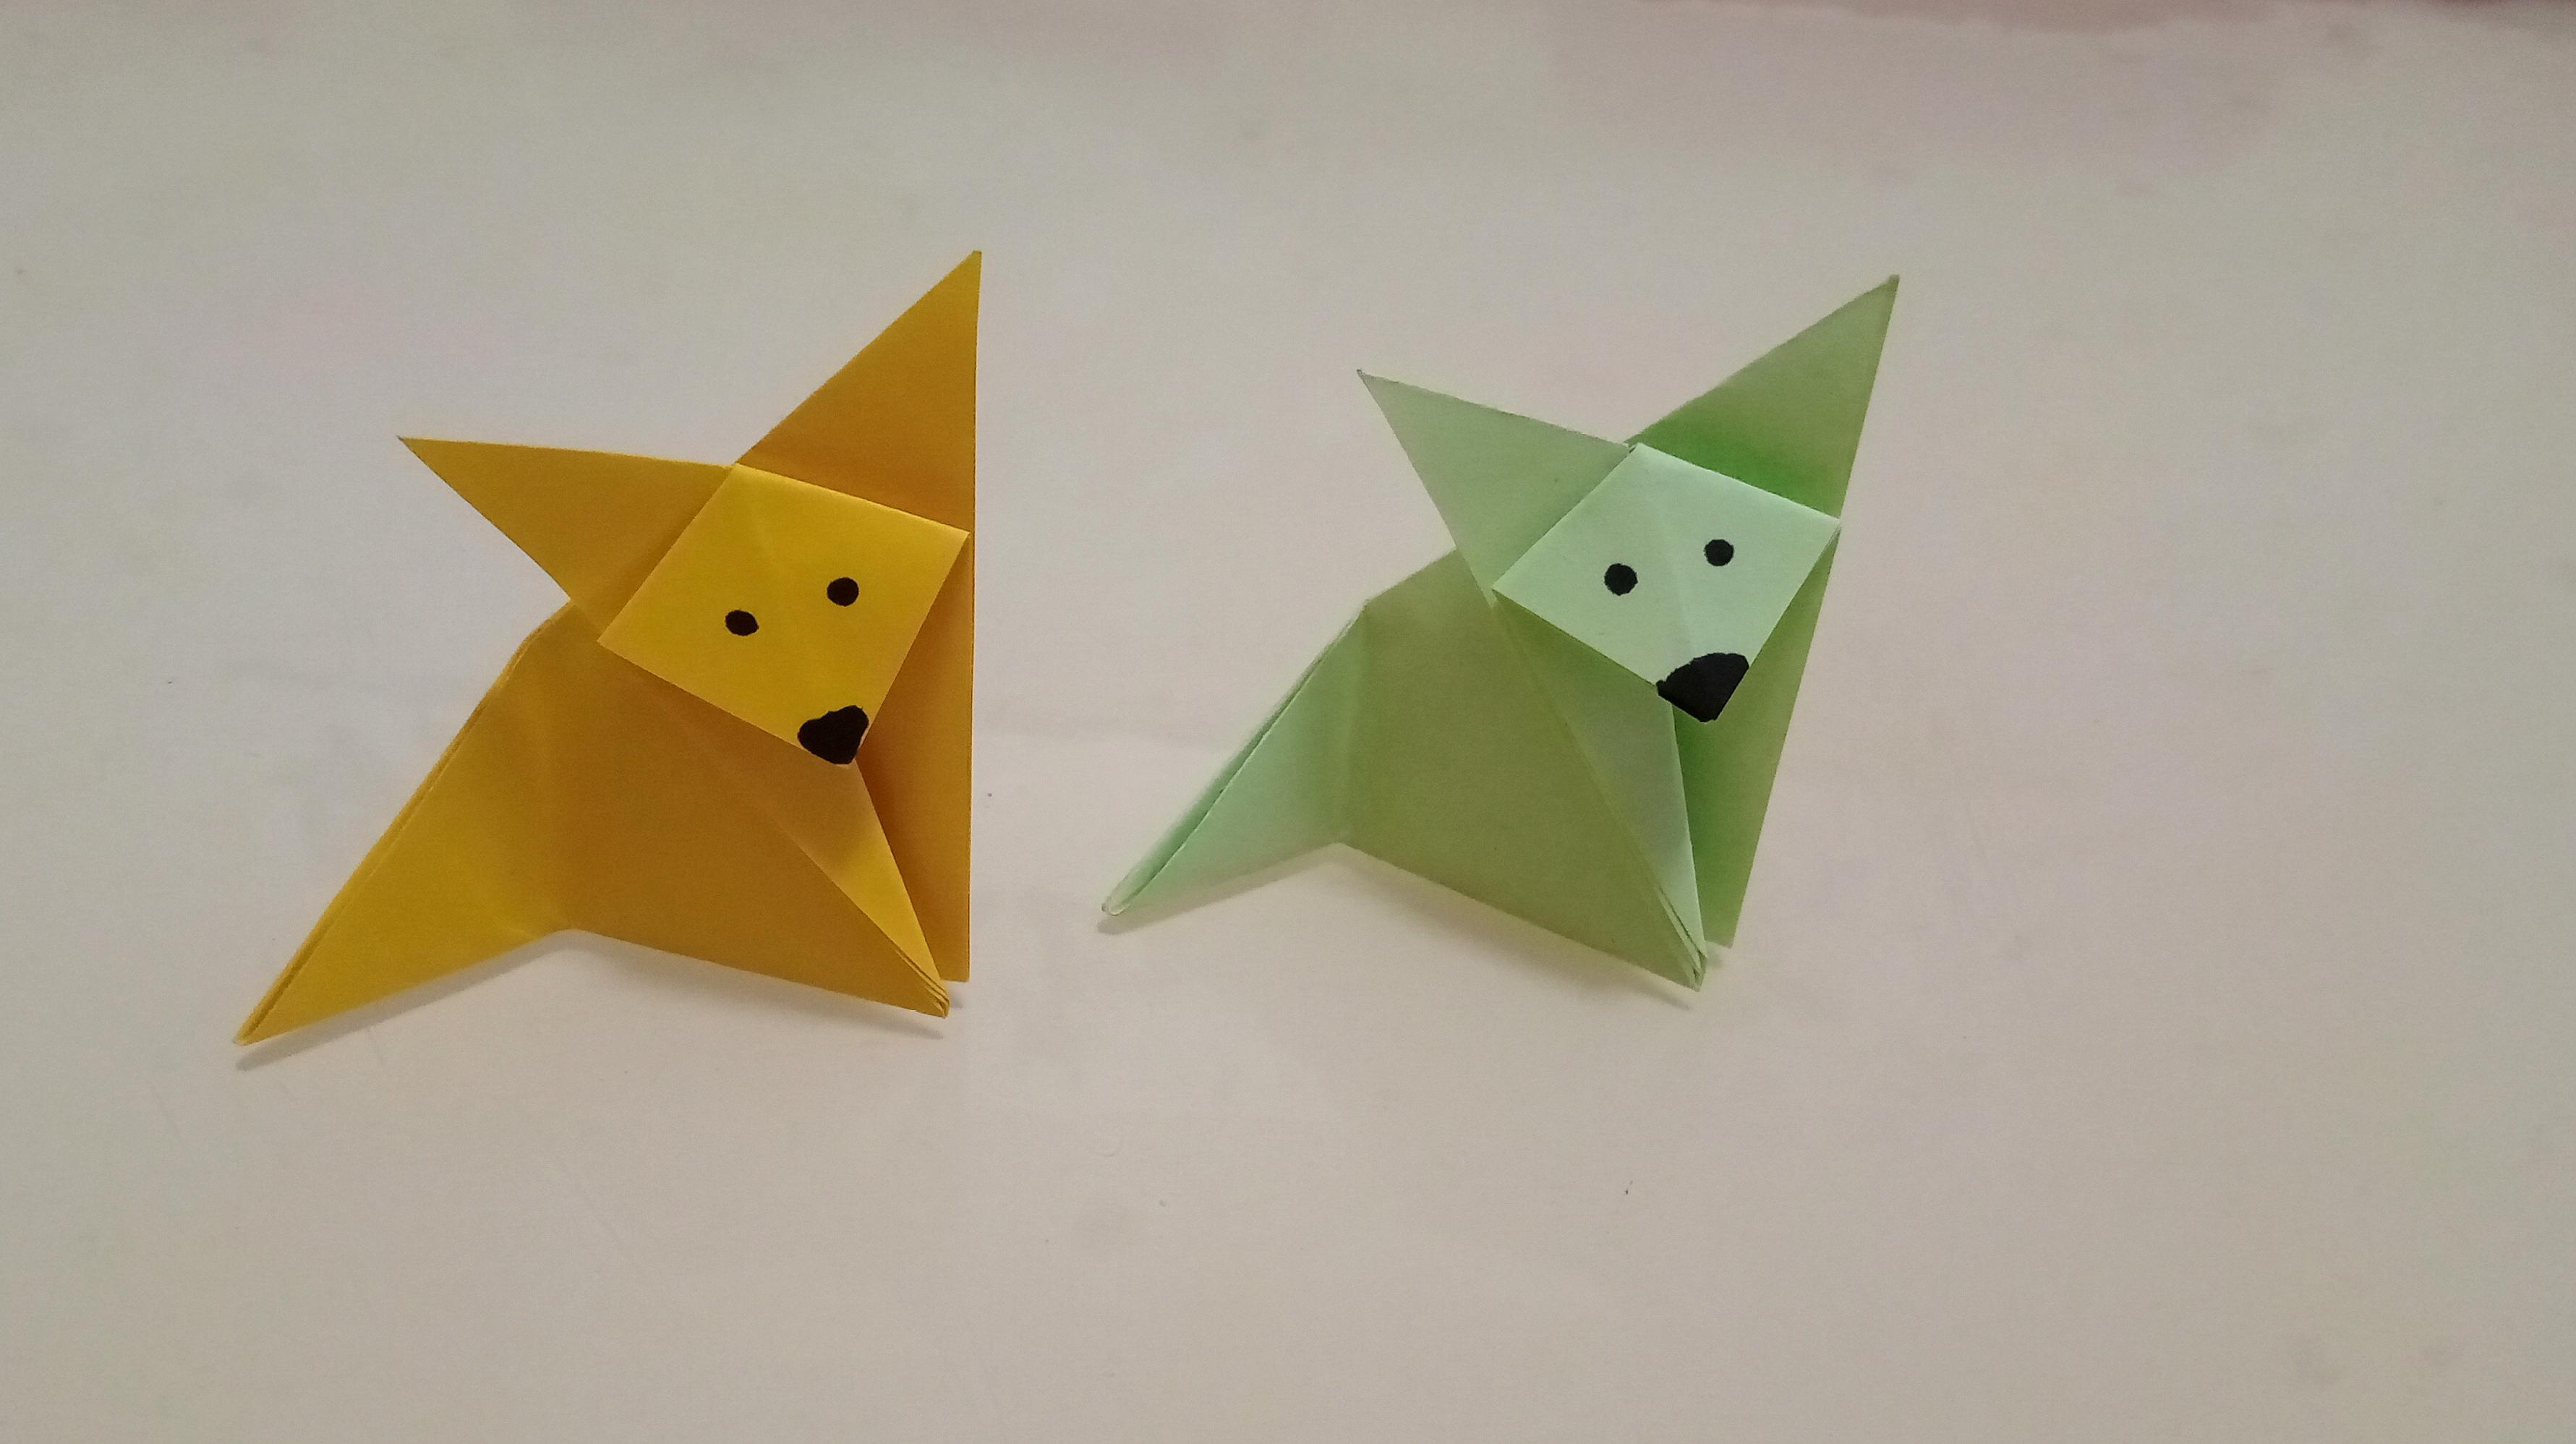 超级简单可爱的折纸小狐狸,详细步骤解说,一张小正方形纸就够了